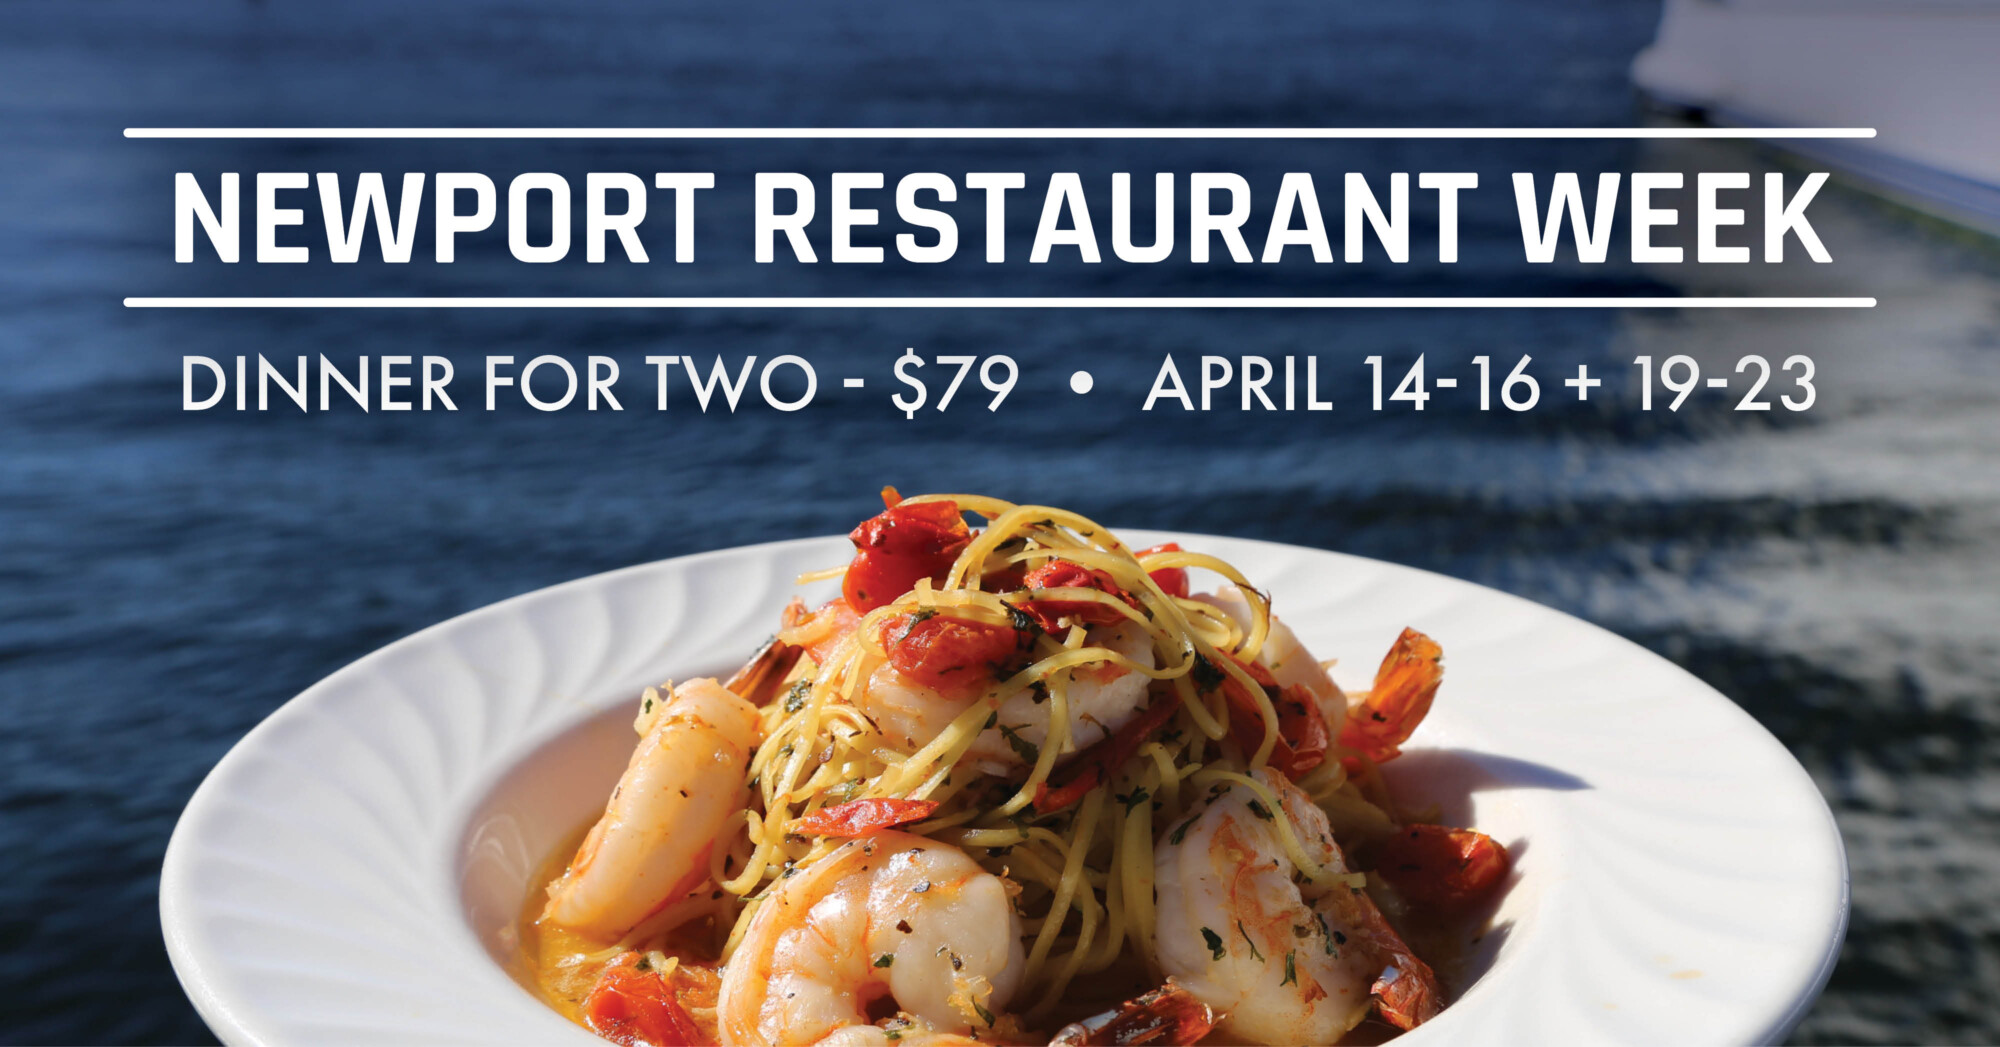 Newport Restaurant Week. Dinner for two $79 - April 14-16 & 19-23